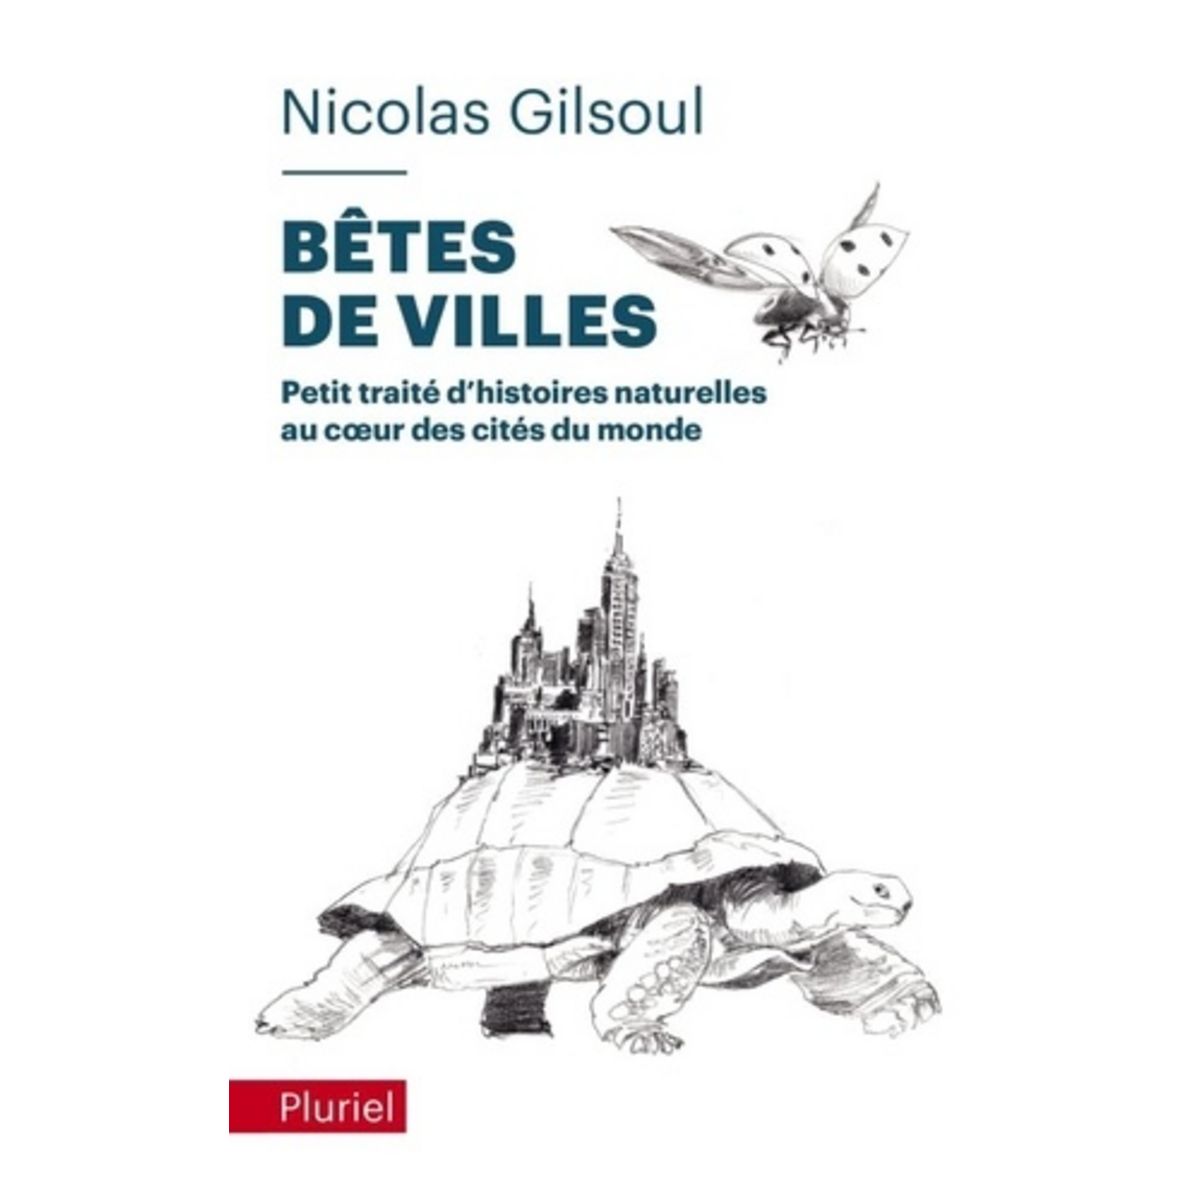  BETES DE VILLES. PETIT TRAITE D'HISTOIRES NATURELLES AU COEUR DES CITES DU MONDE, Gilsoul Nicolas